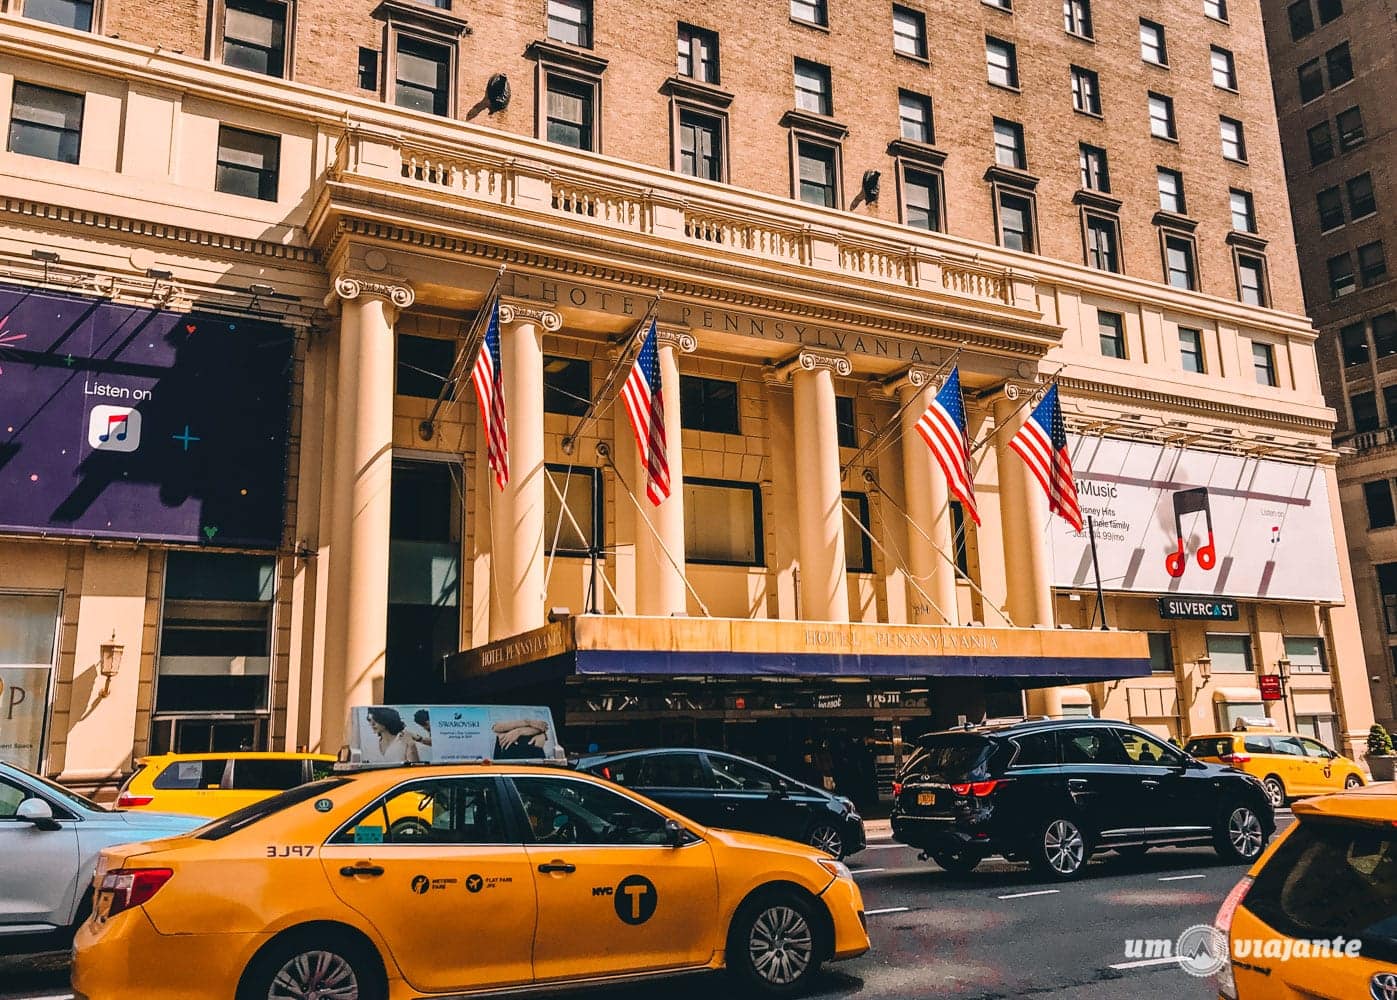 Hotel Pennsylvania Nova York: vale a pena ficar no pior/melhor hotel de NYC